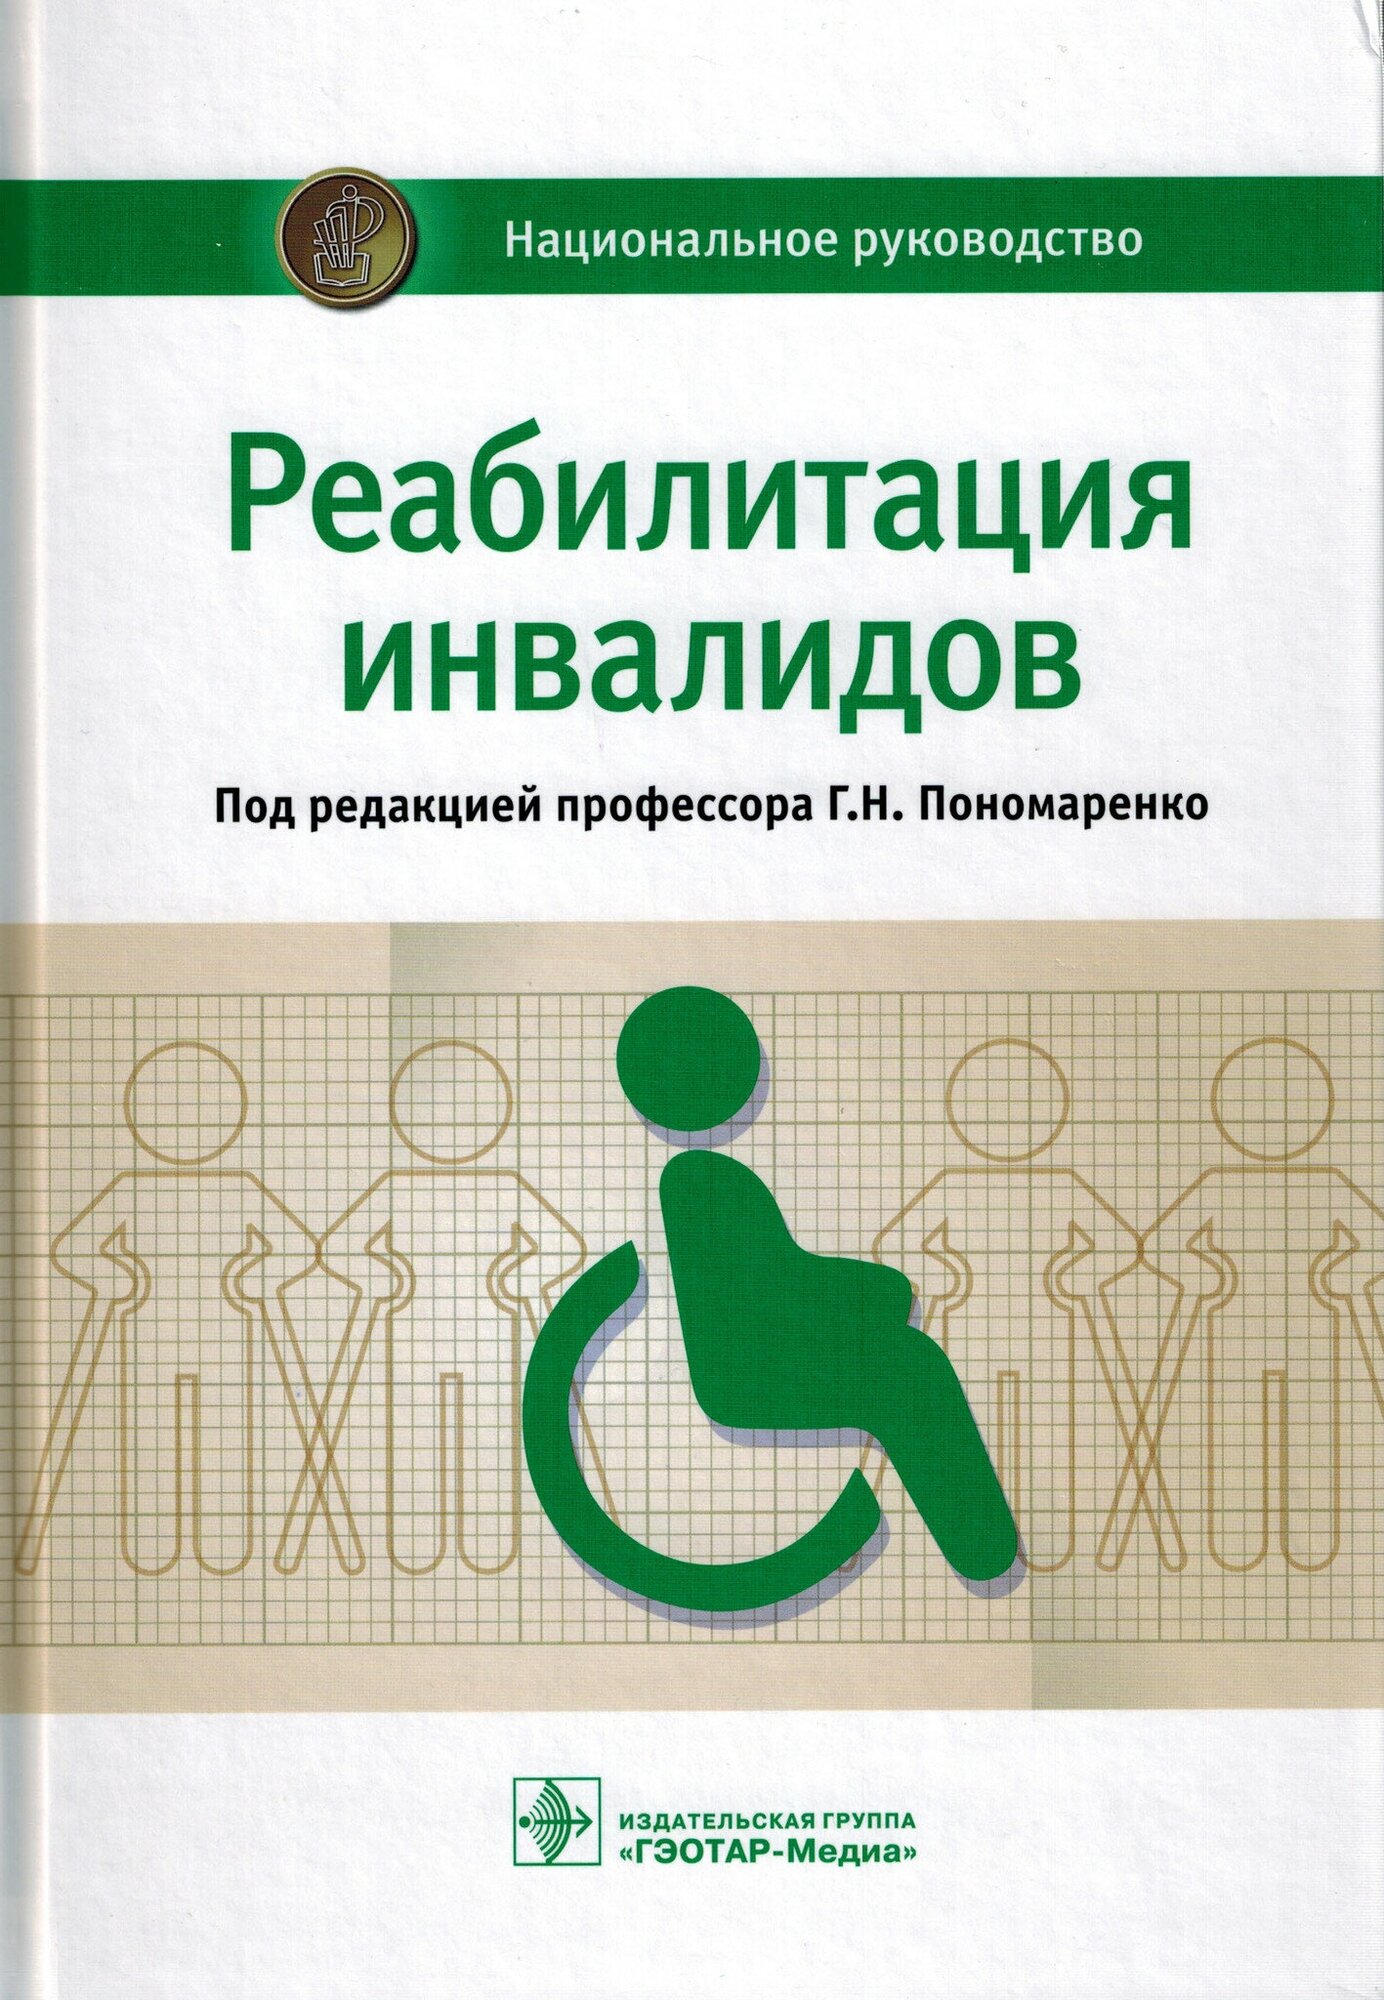 Реабилитация инвалидов. Национальное руководство - фото №3